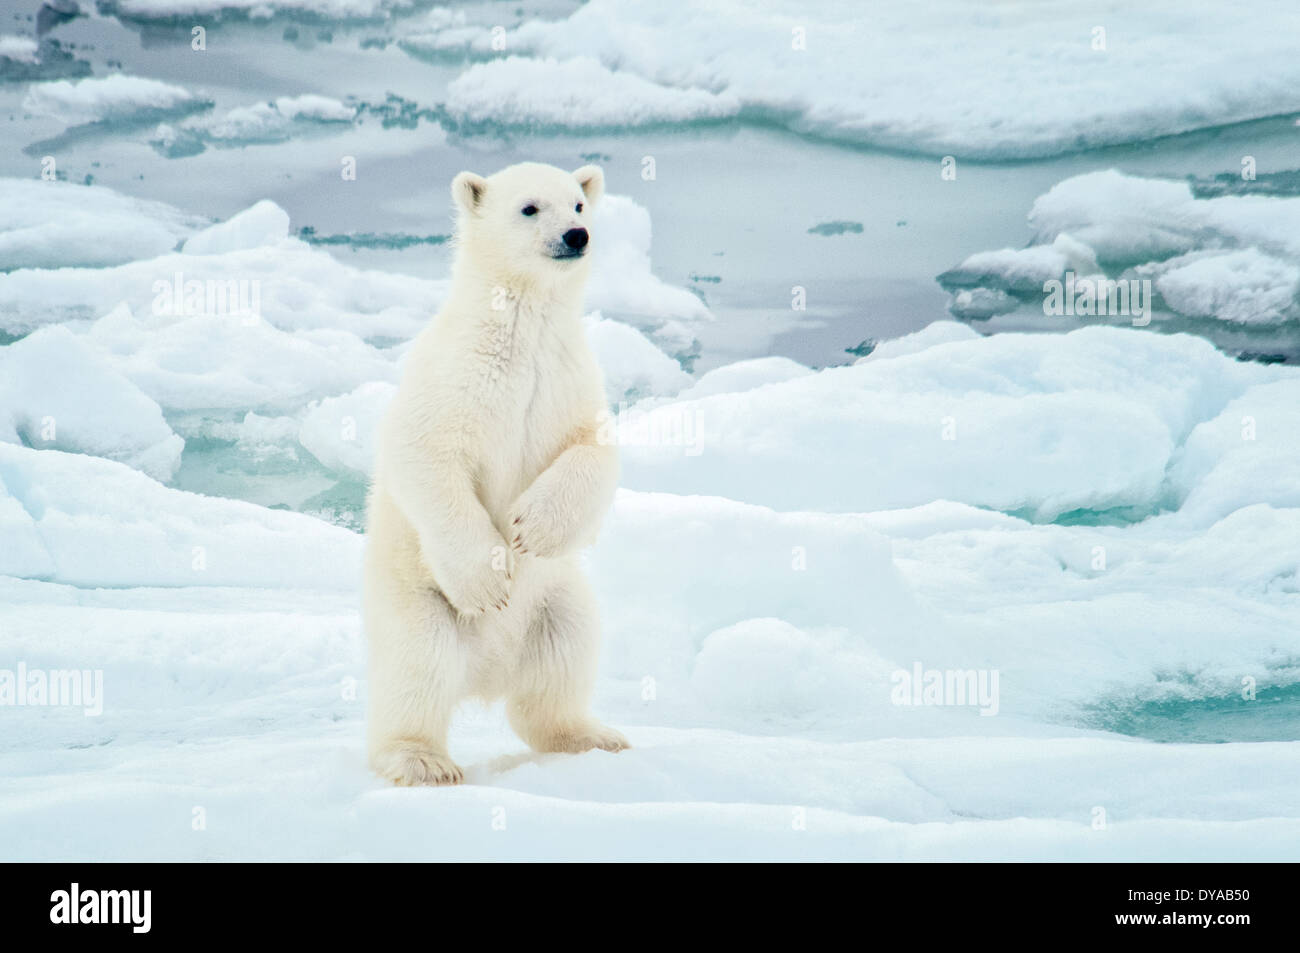 Carino Polar Bear Cub, Ursus maritimus, in piedi sul Olgastretet Pack ghiaccio, arcipelago delle Svalbard, Norvegia Foto Stock